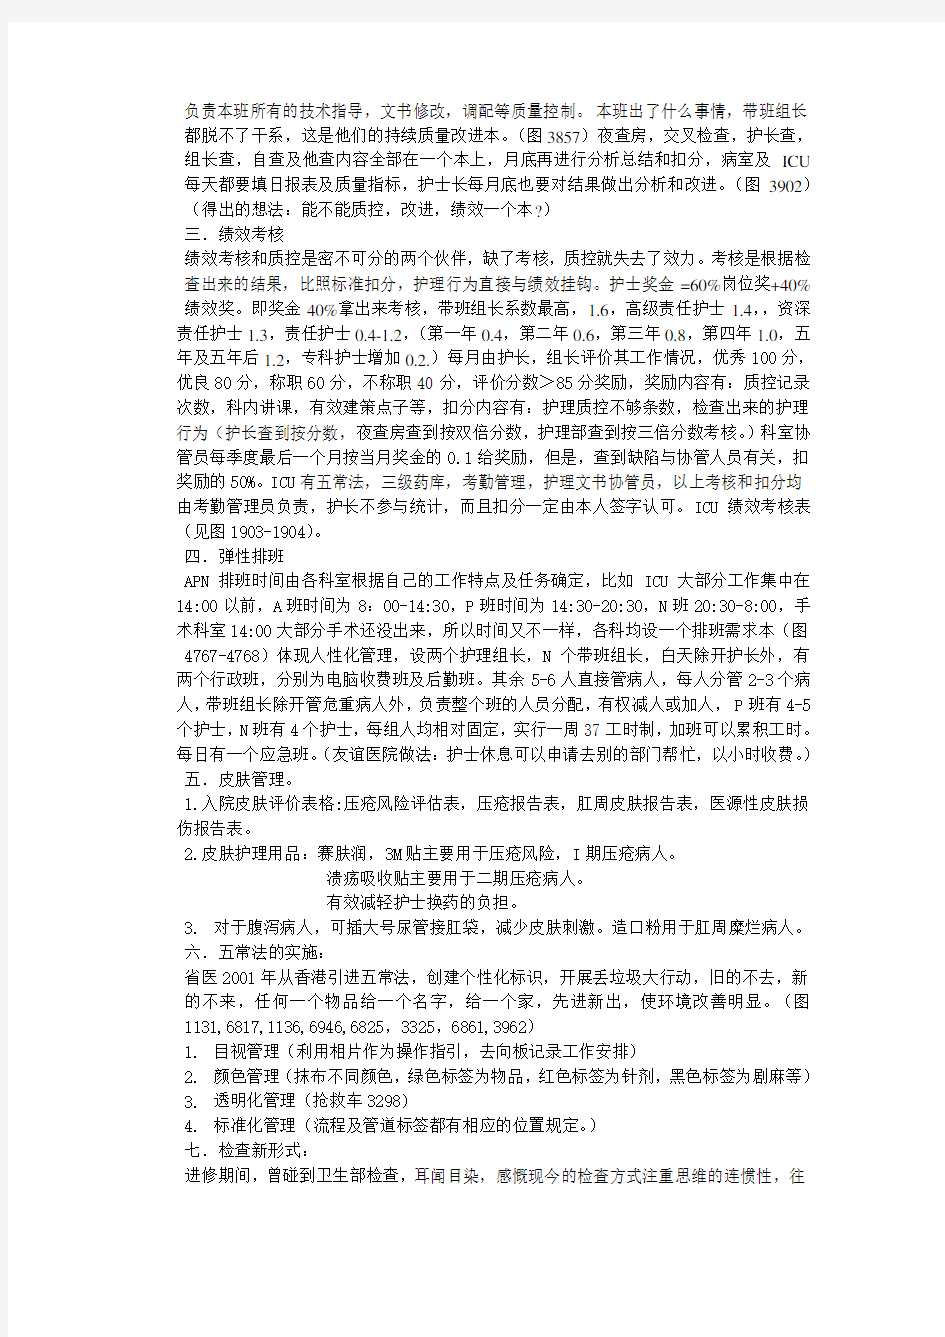 广东省人民医院ICU进修总结汇报